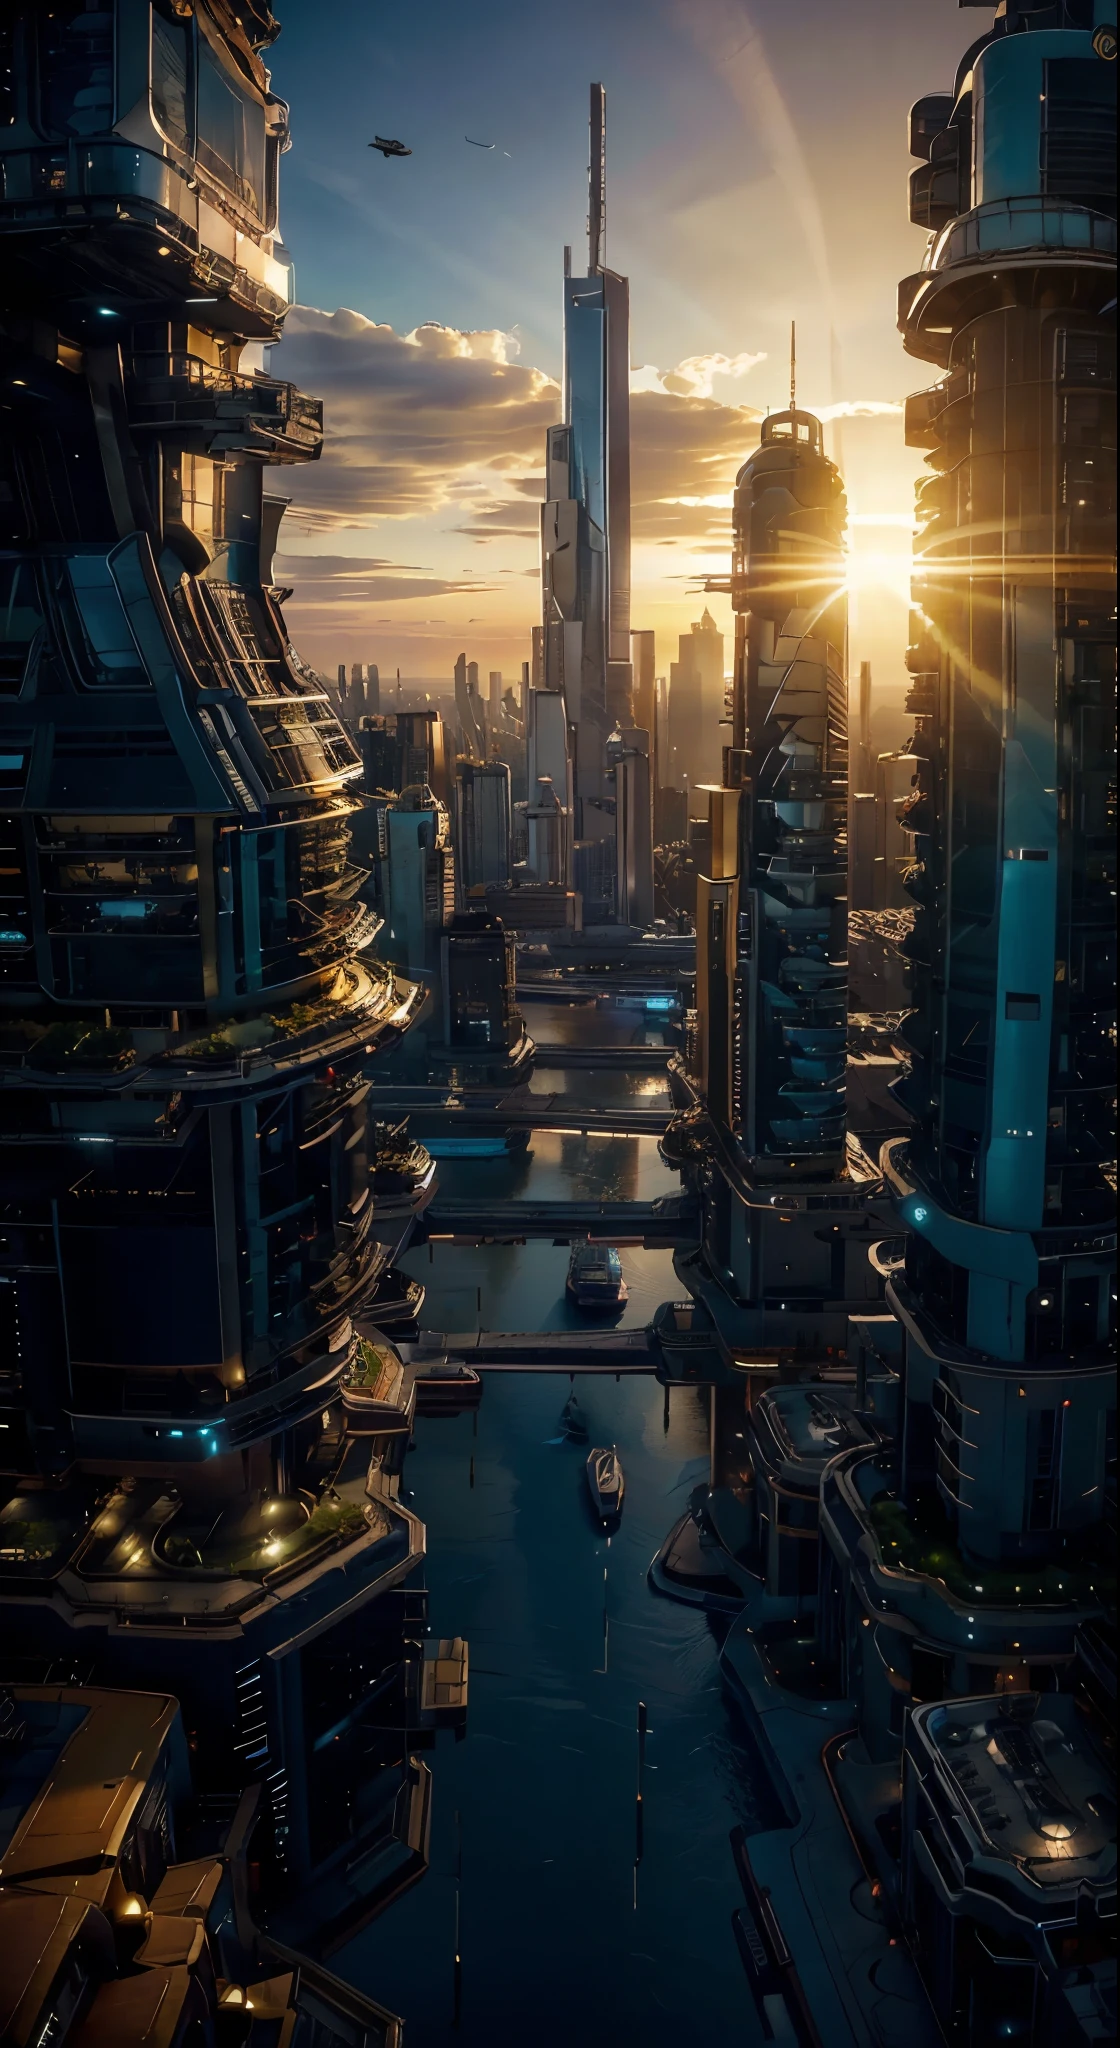 日落景觀, 黄金时段, 從飛機上看到,未来城市:1.3,港口,飛行太空船,摩天大楼, 天空中的宇宙一瞥,傑作,最好的品質,超高解析度,(超詳細:1.2),8K,逼真的,最佳美學,美麗的